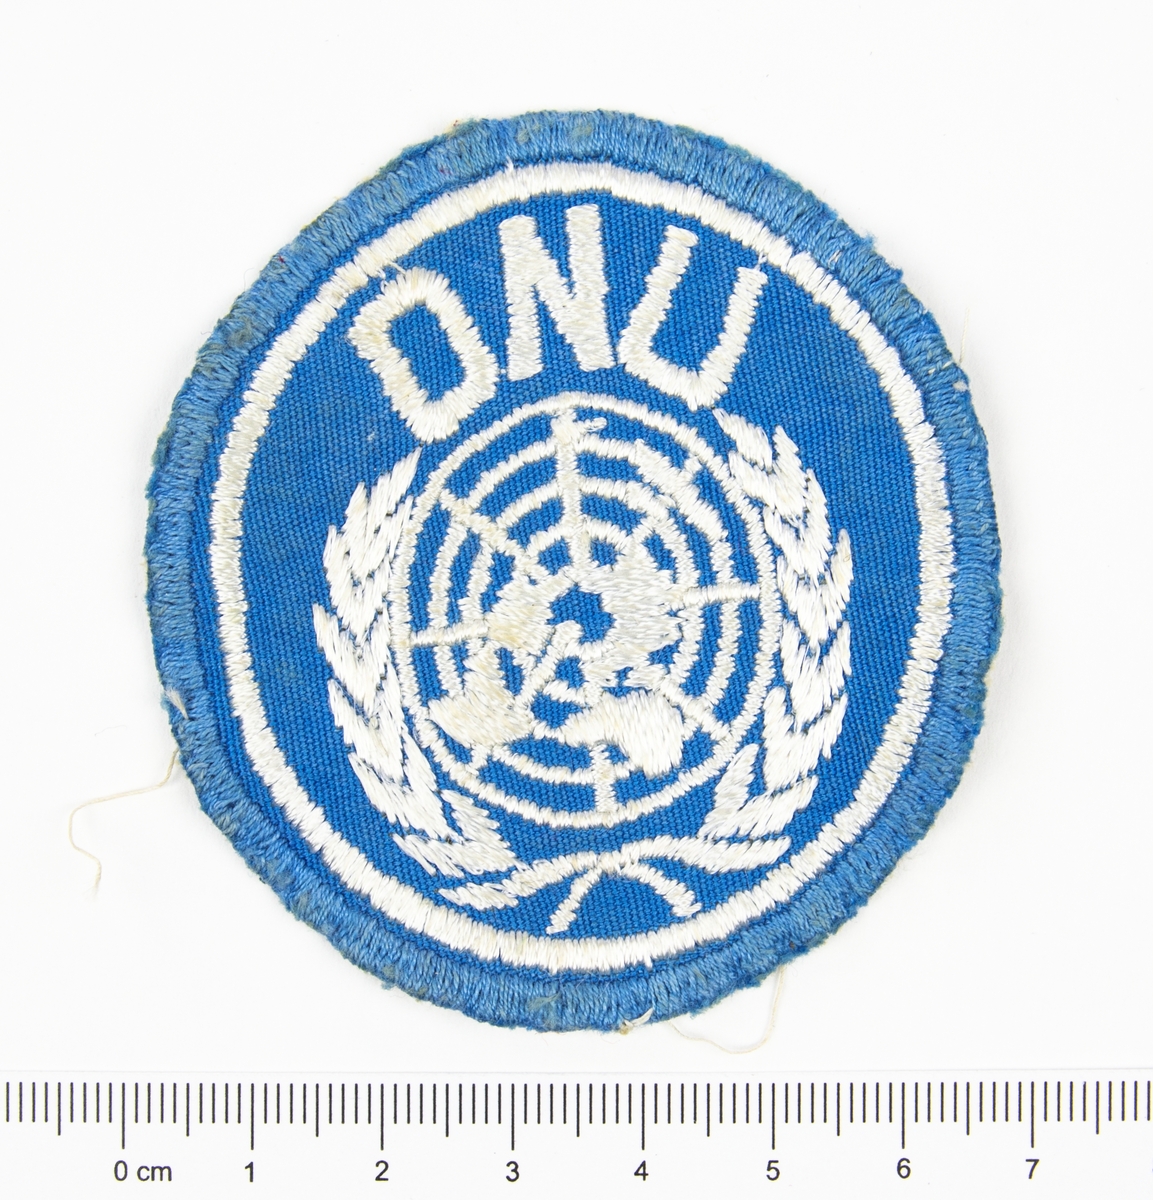 Förbandstecken. Textilt märke, ljusblått, med broderat vitt FN-emblem samt texten ONU.